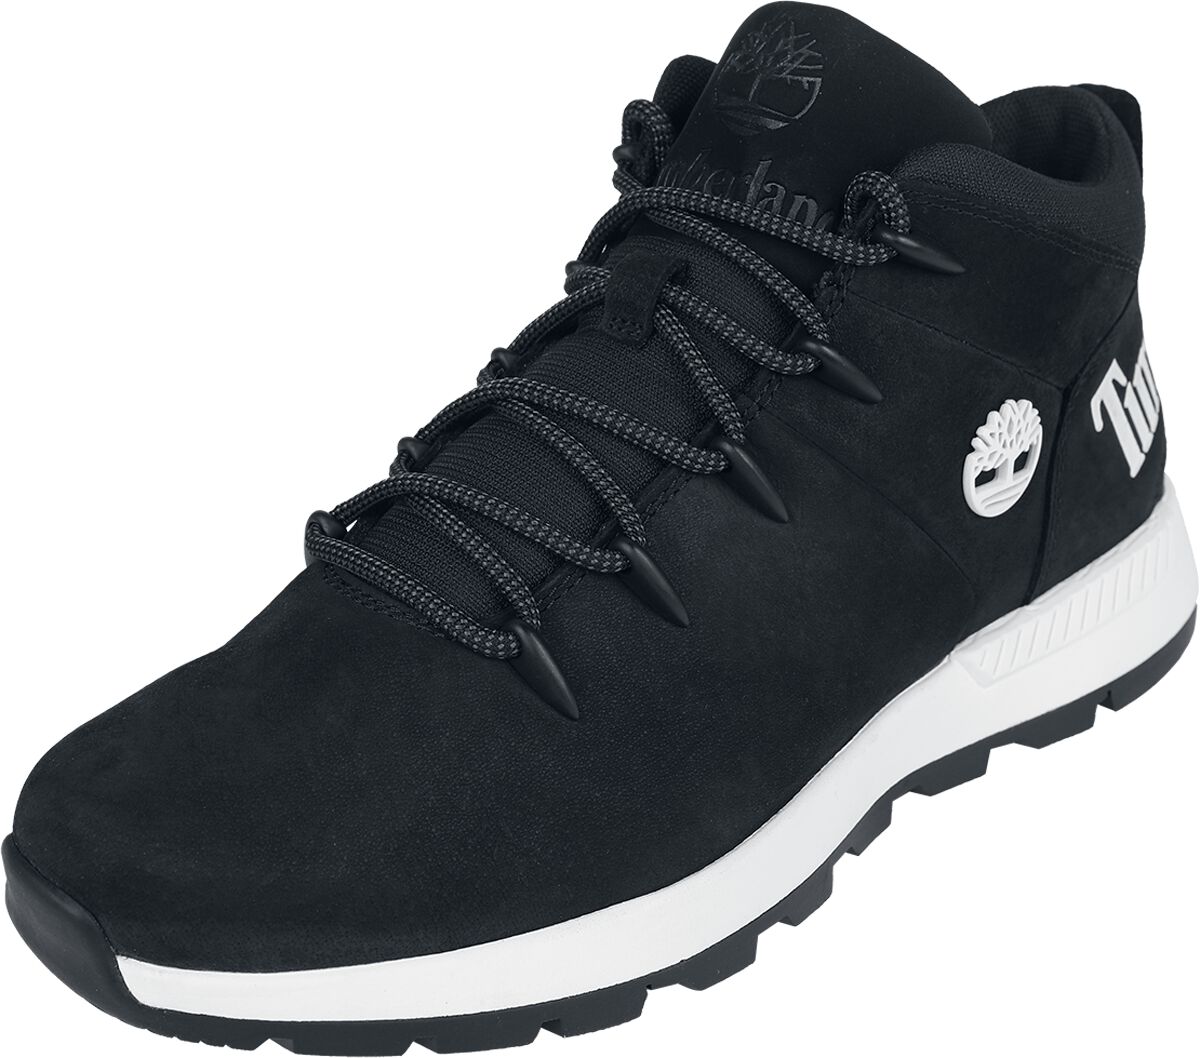 Timberland Sneaker - Sprint Trekker Mid Lace Up - EU41 bis EU46 - für Männer - Größe EU46 - schwarz